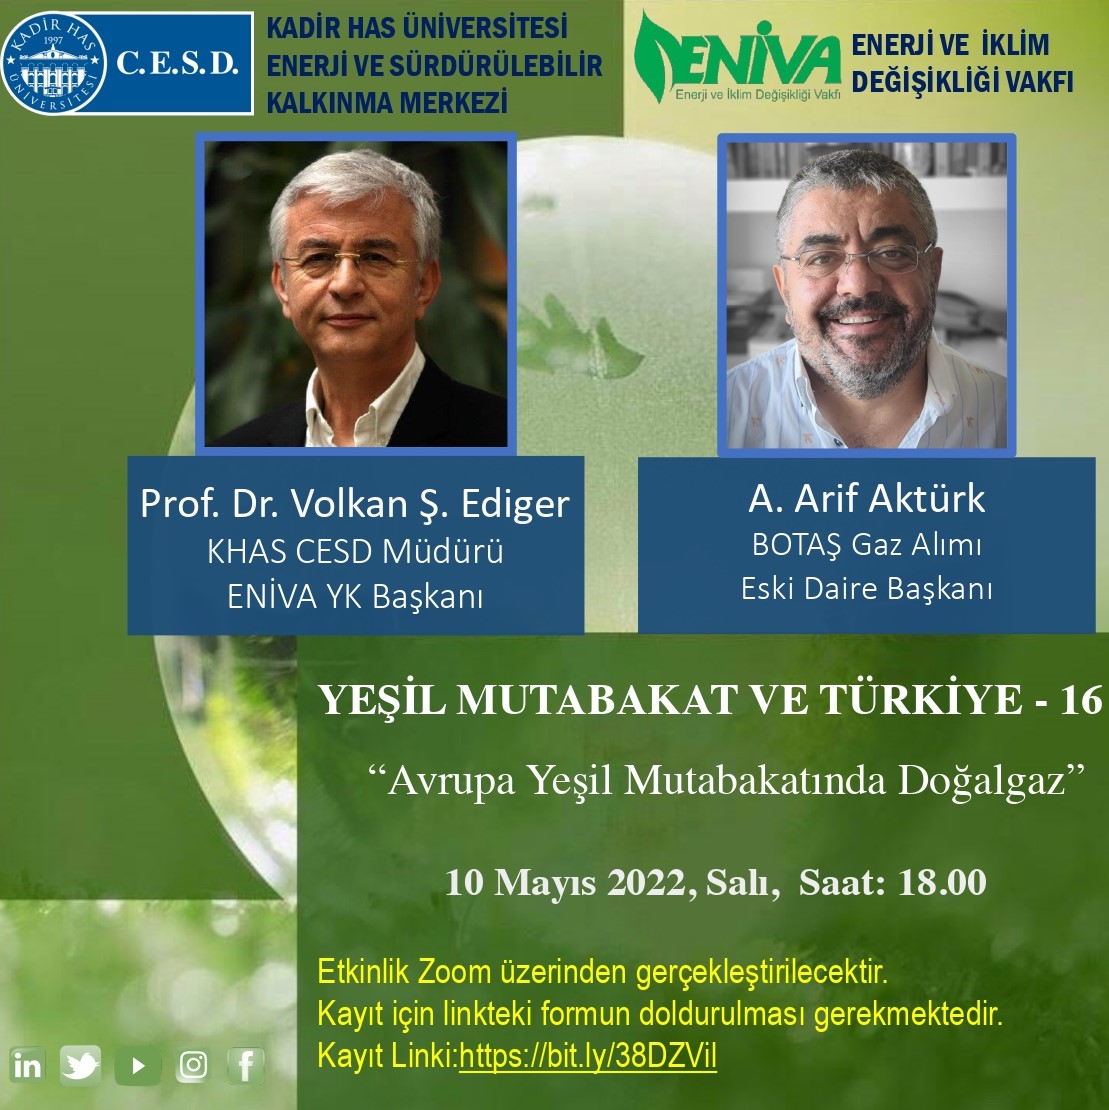 Yeşil Mutabakat ve Türkiye-16: Ali Arif Aktürk